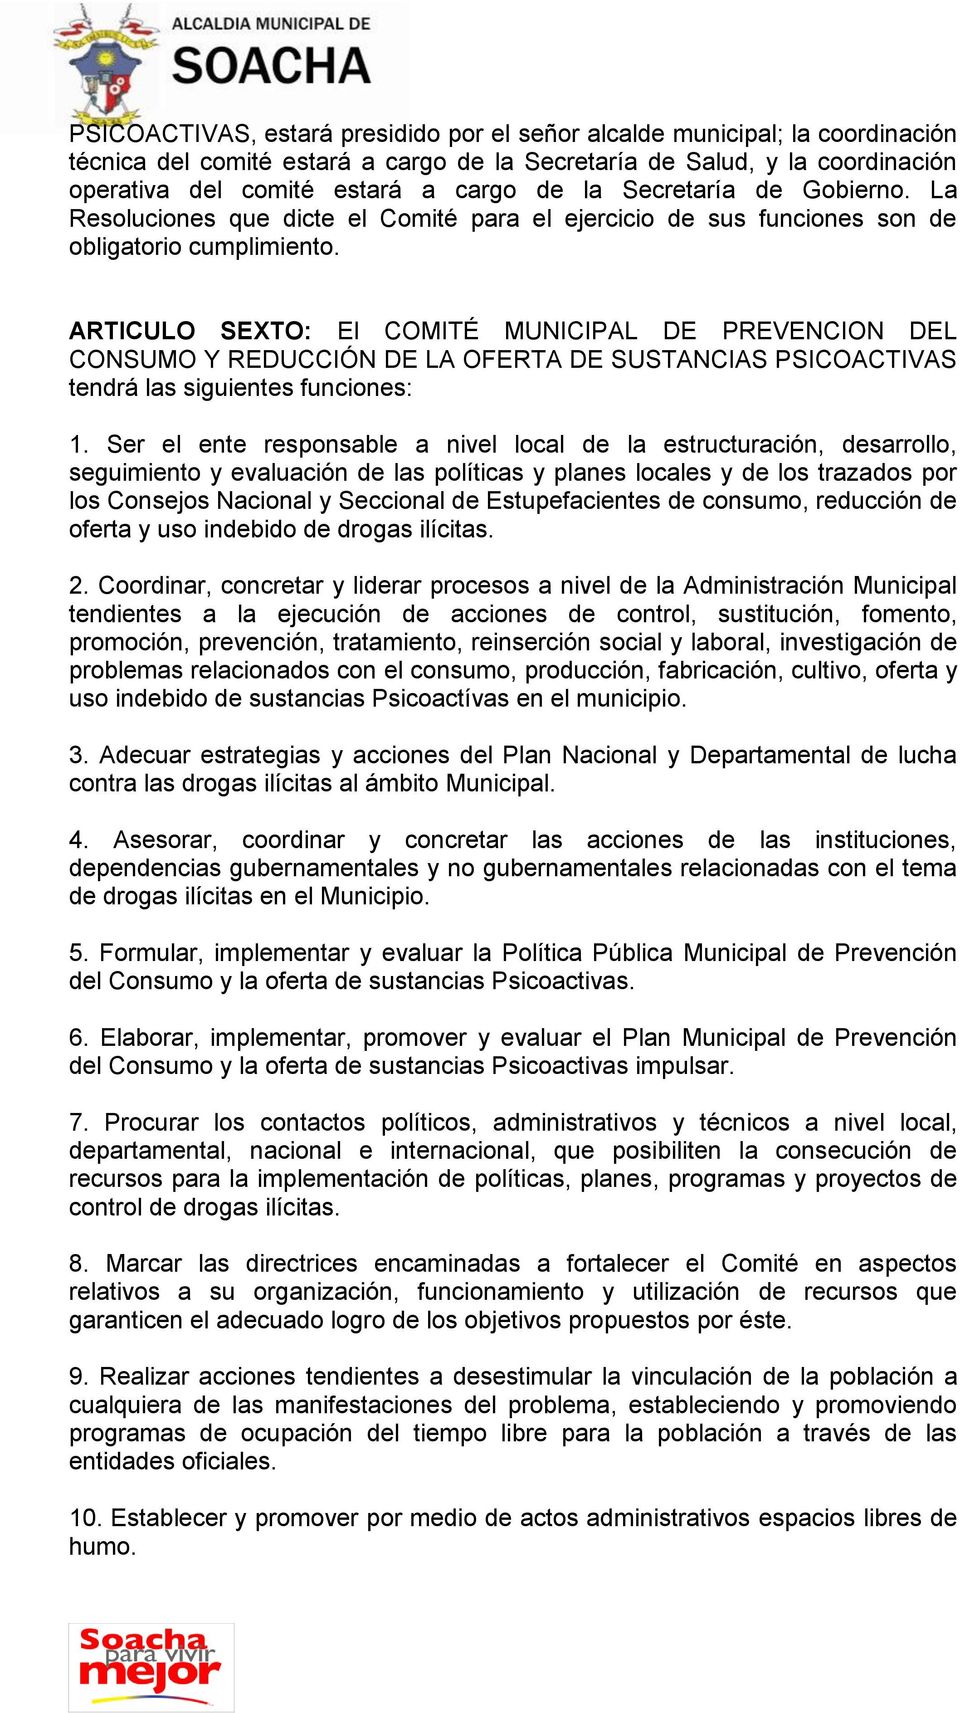 ARTICULO SEXTO: El COMITÉ MUNICIPAL DE PREVENCION DEL PSICOACTIVAS tendrá las siguientes funciones: 1.